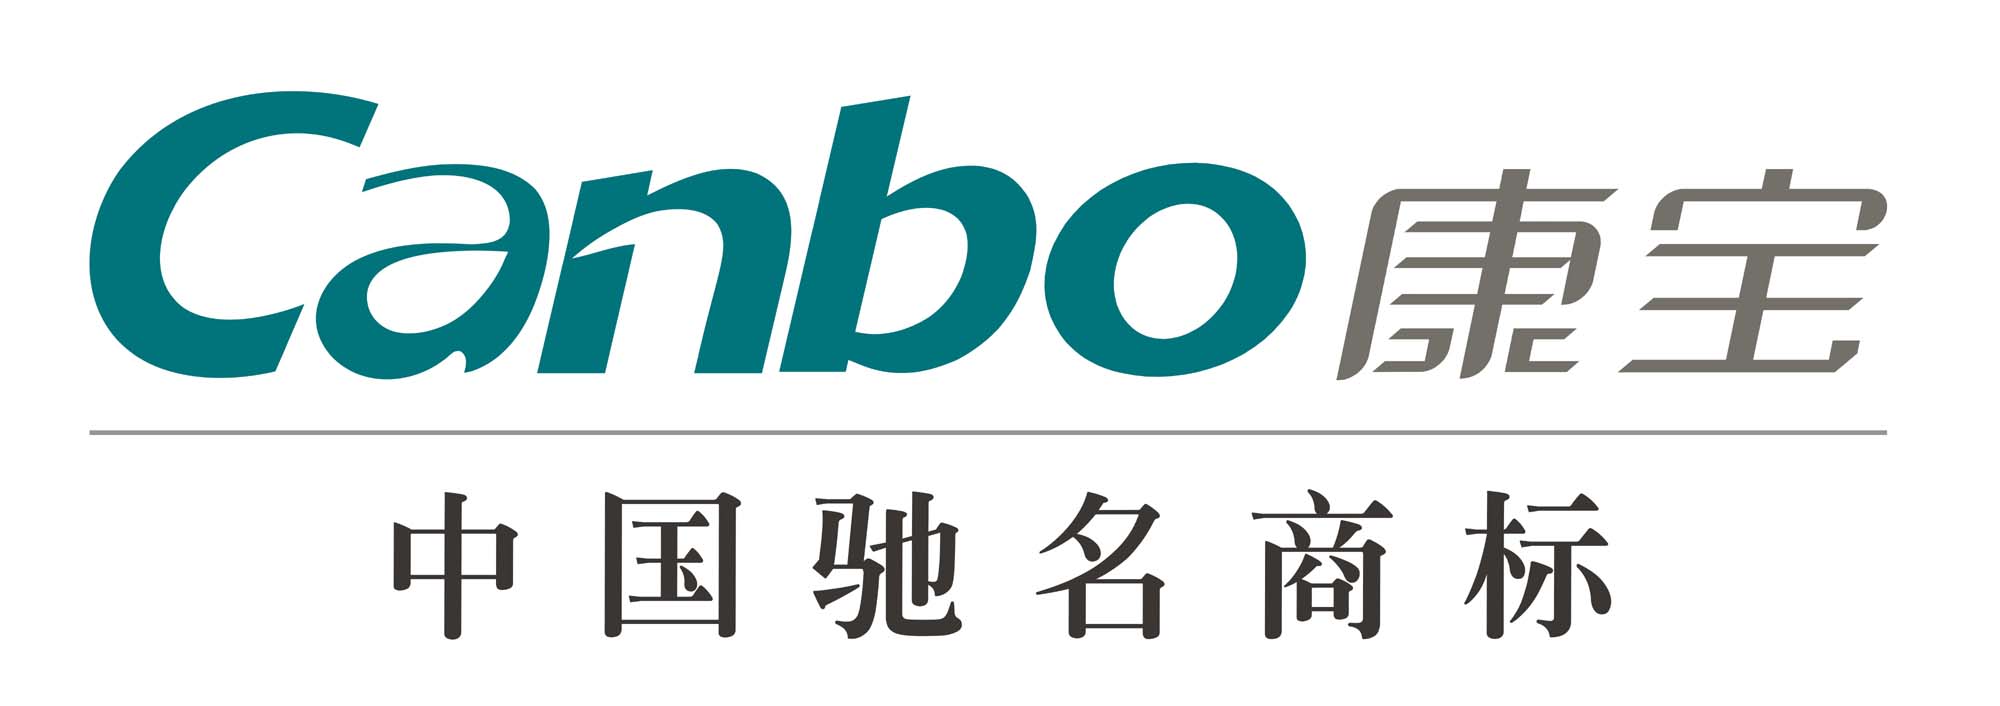 康寶企業標識(logo)